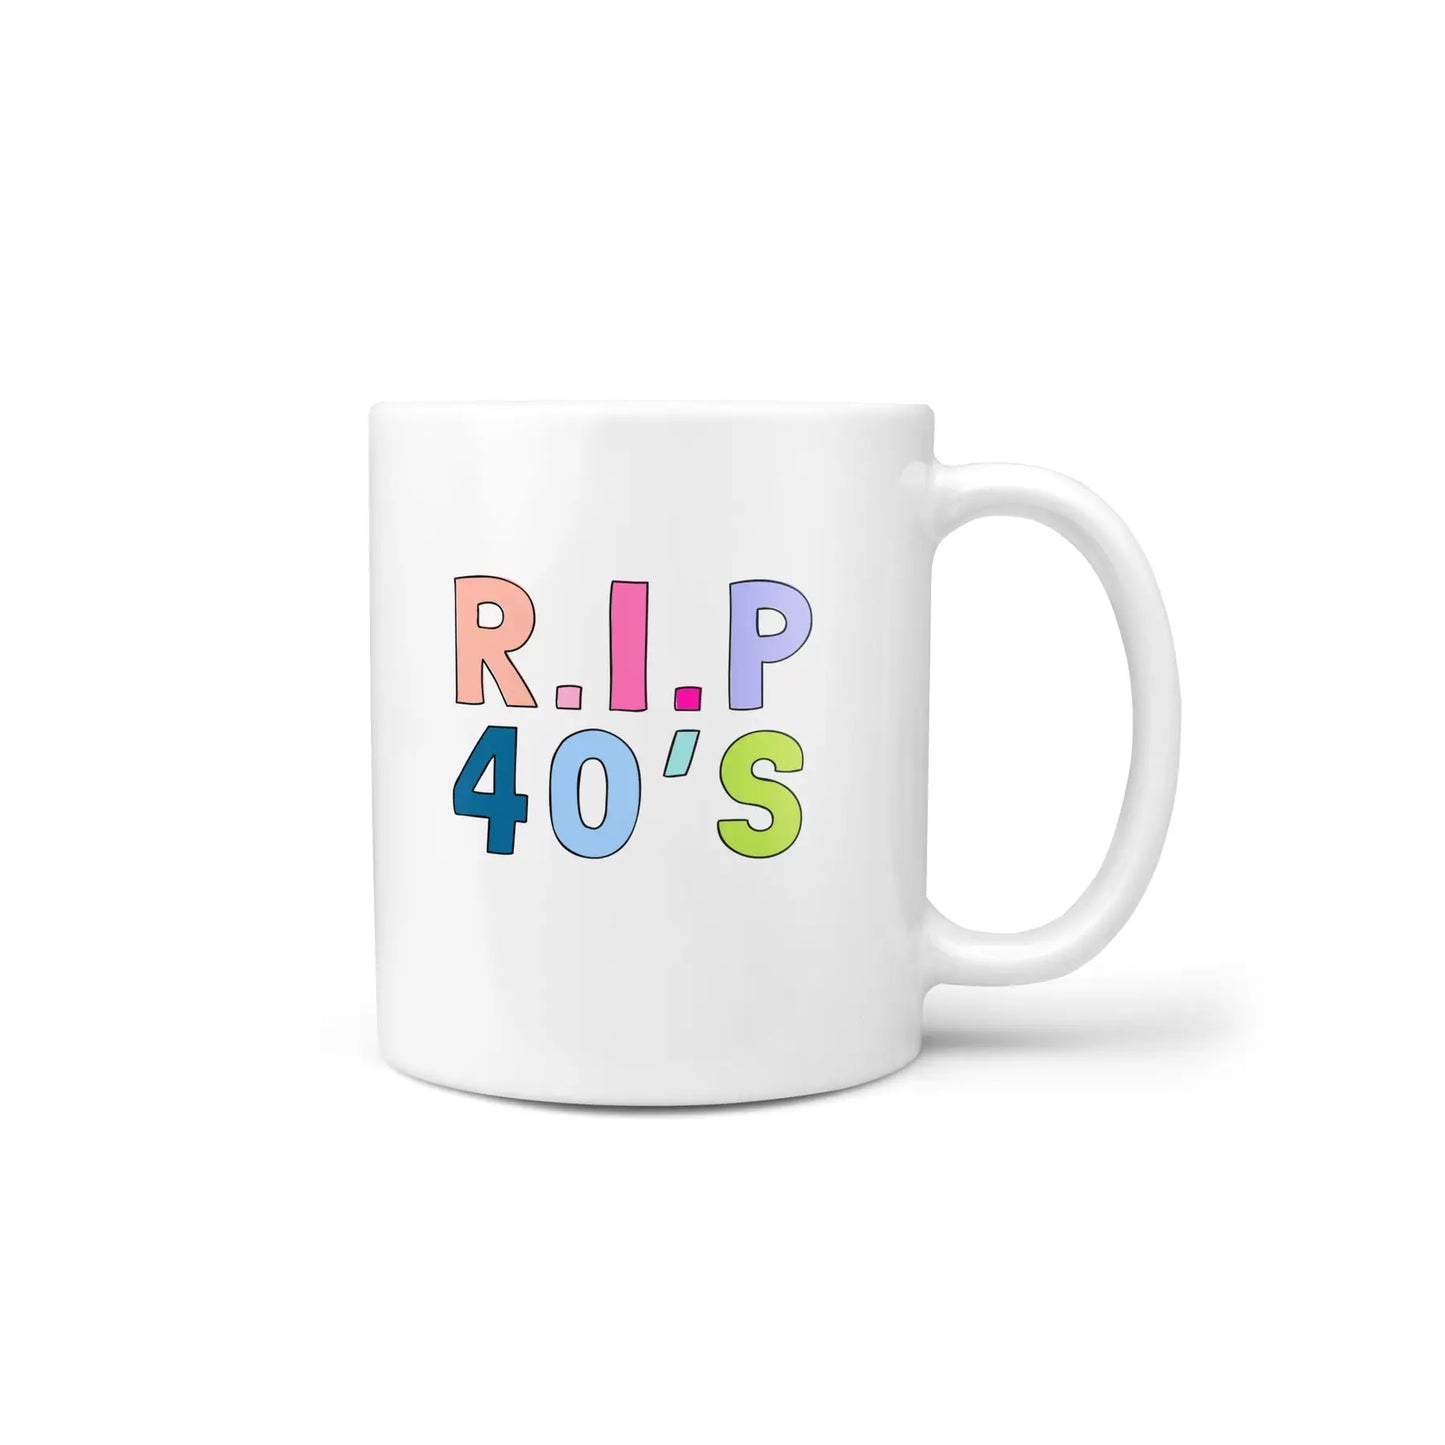 RIP milestone mugs & coasters